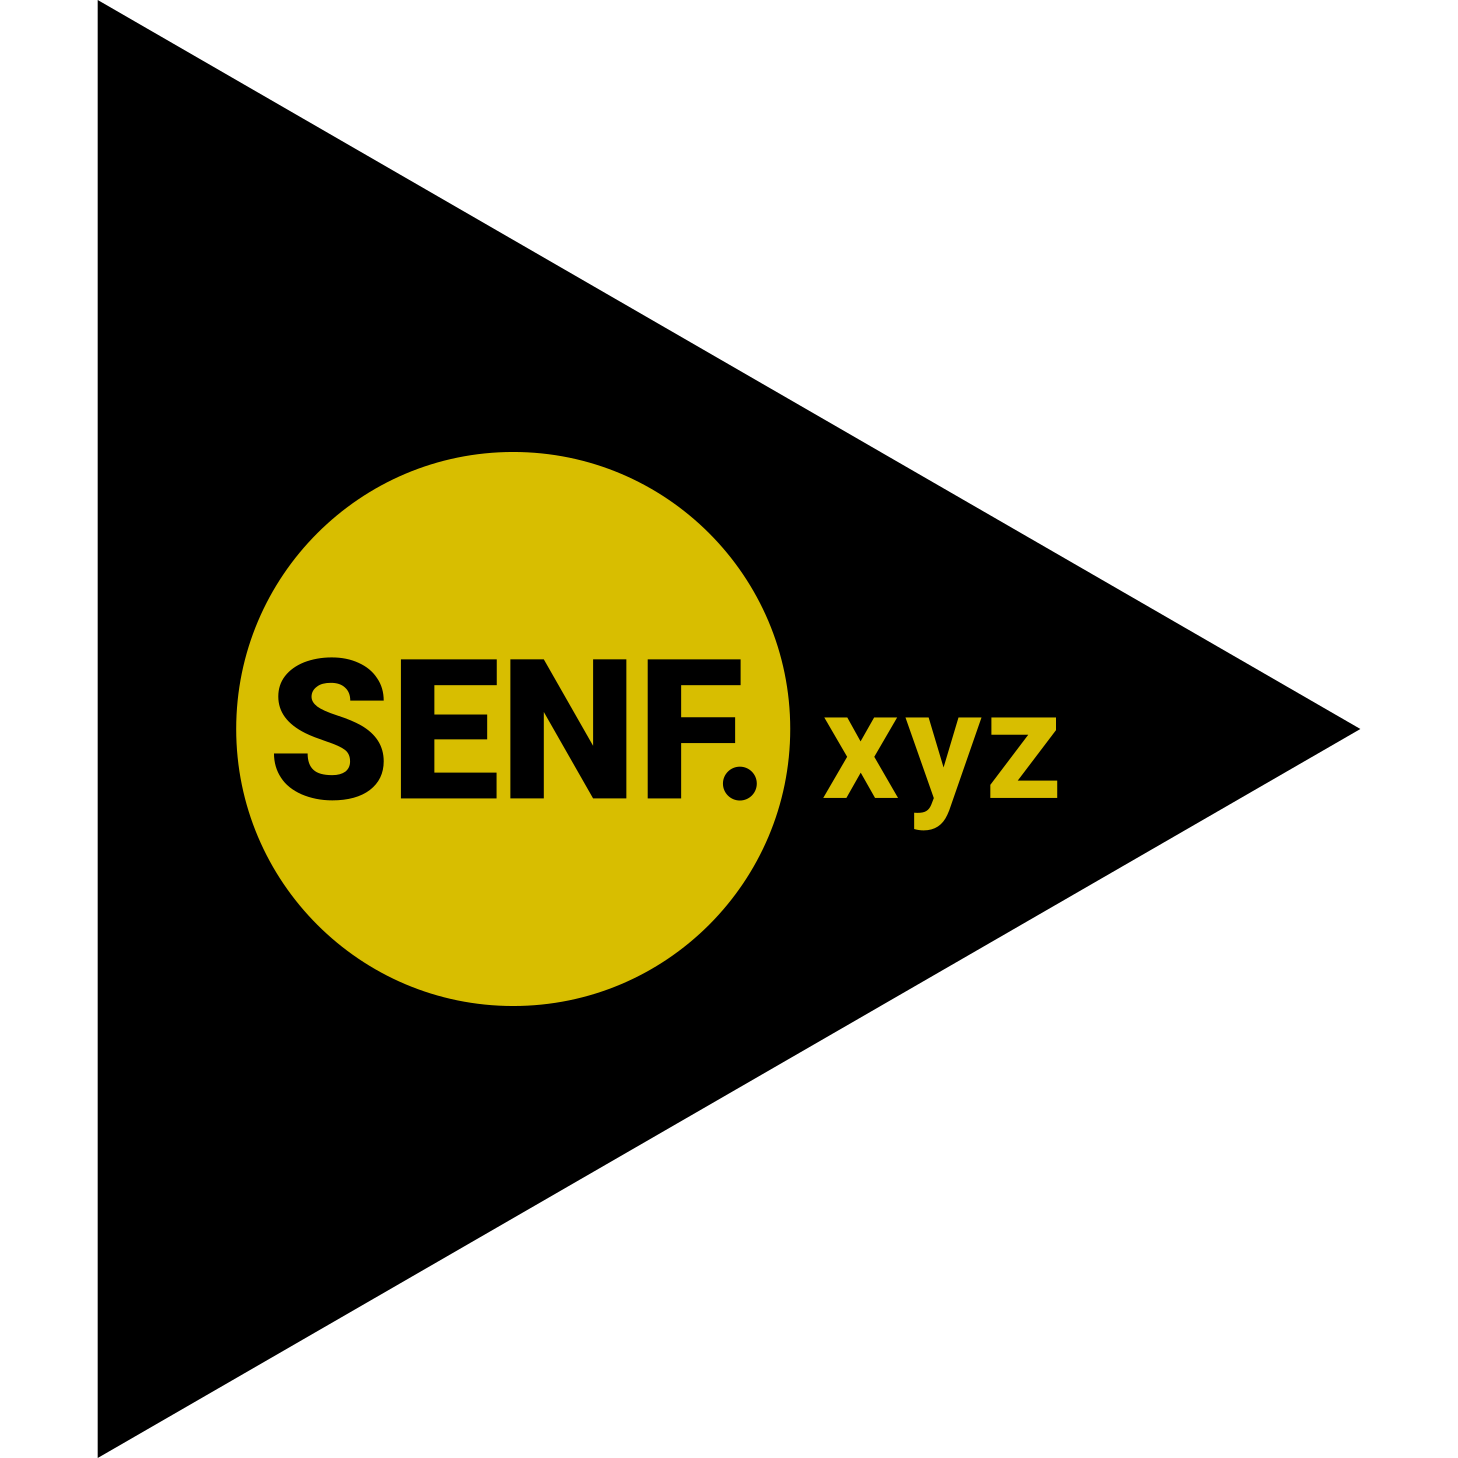 (c) Senf.xyz